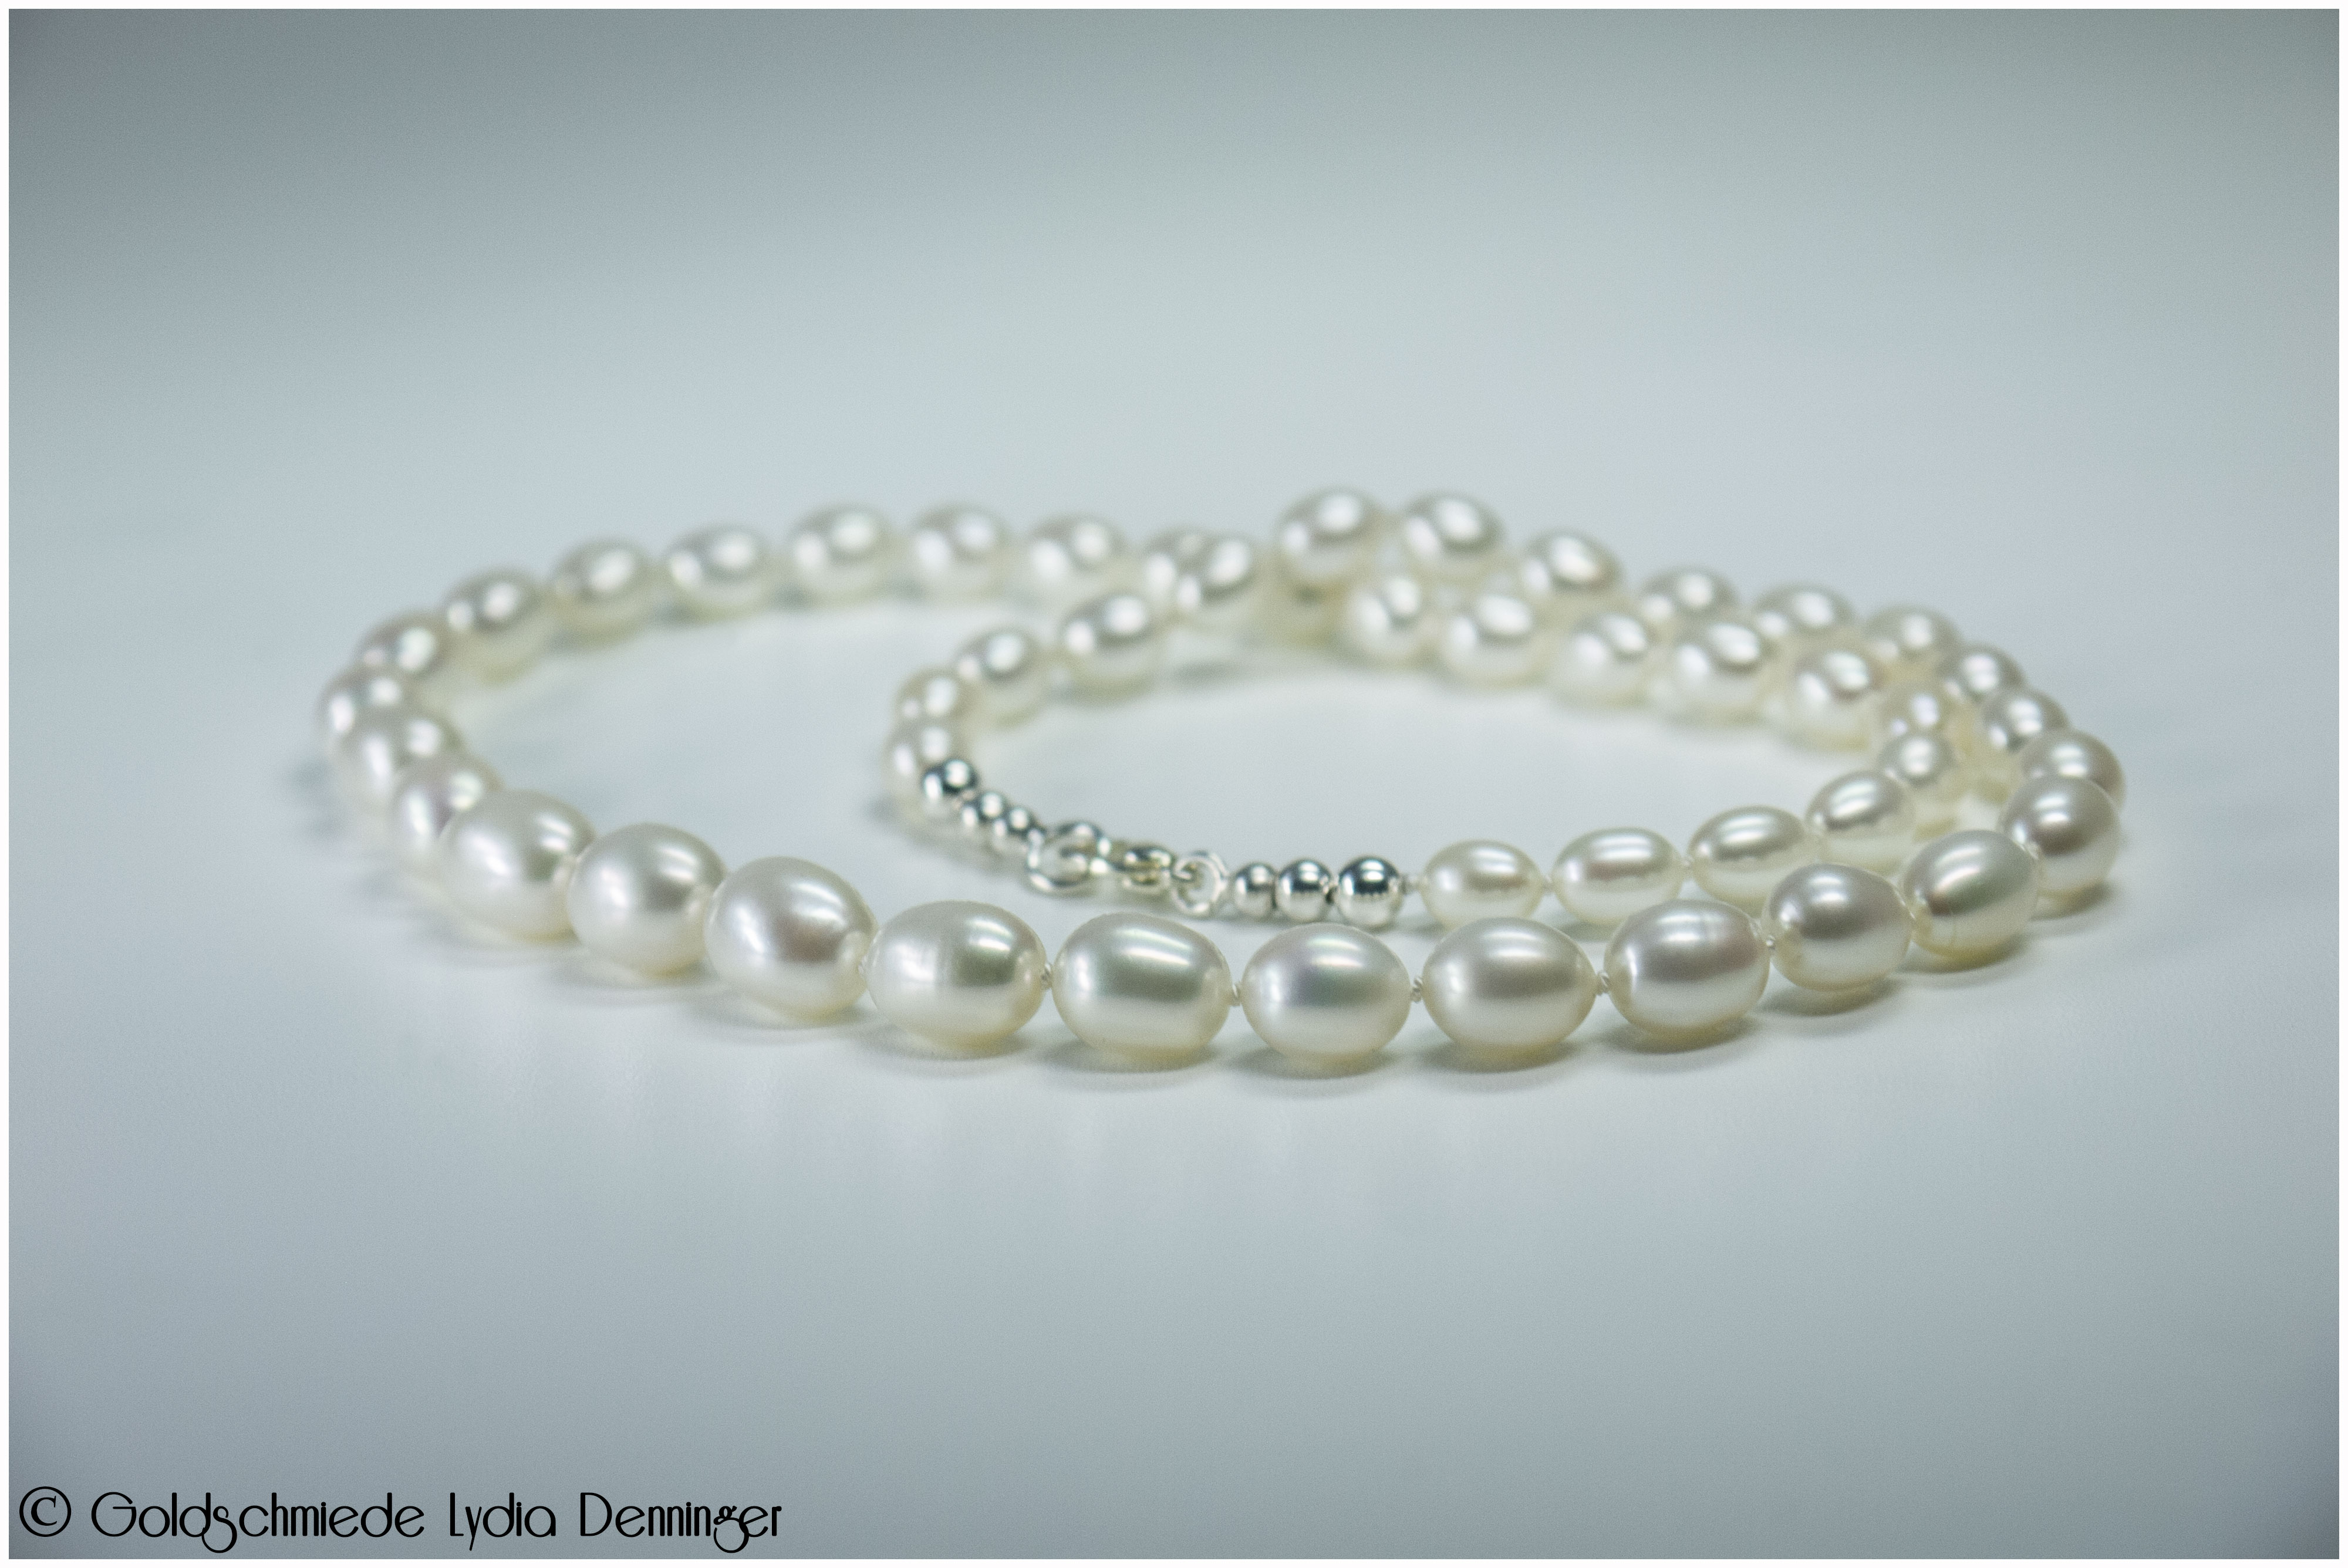 Collier-Perlenkette - Diese Collierform hebt die fünf größten Mittelperlen effektvoll hervor.